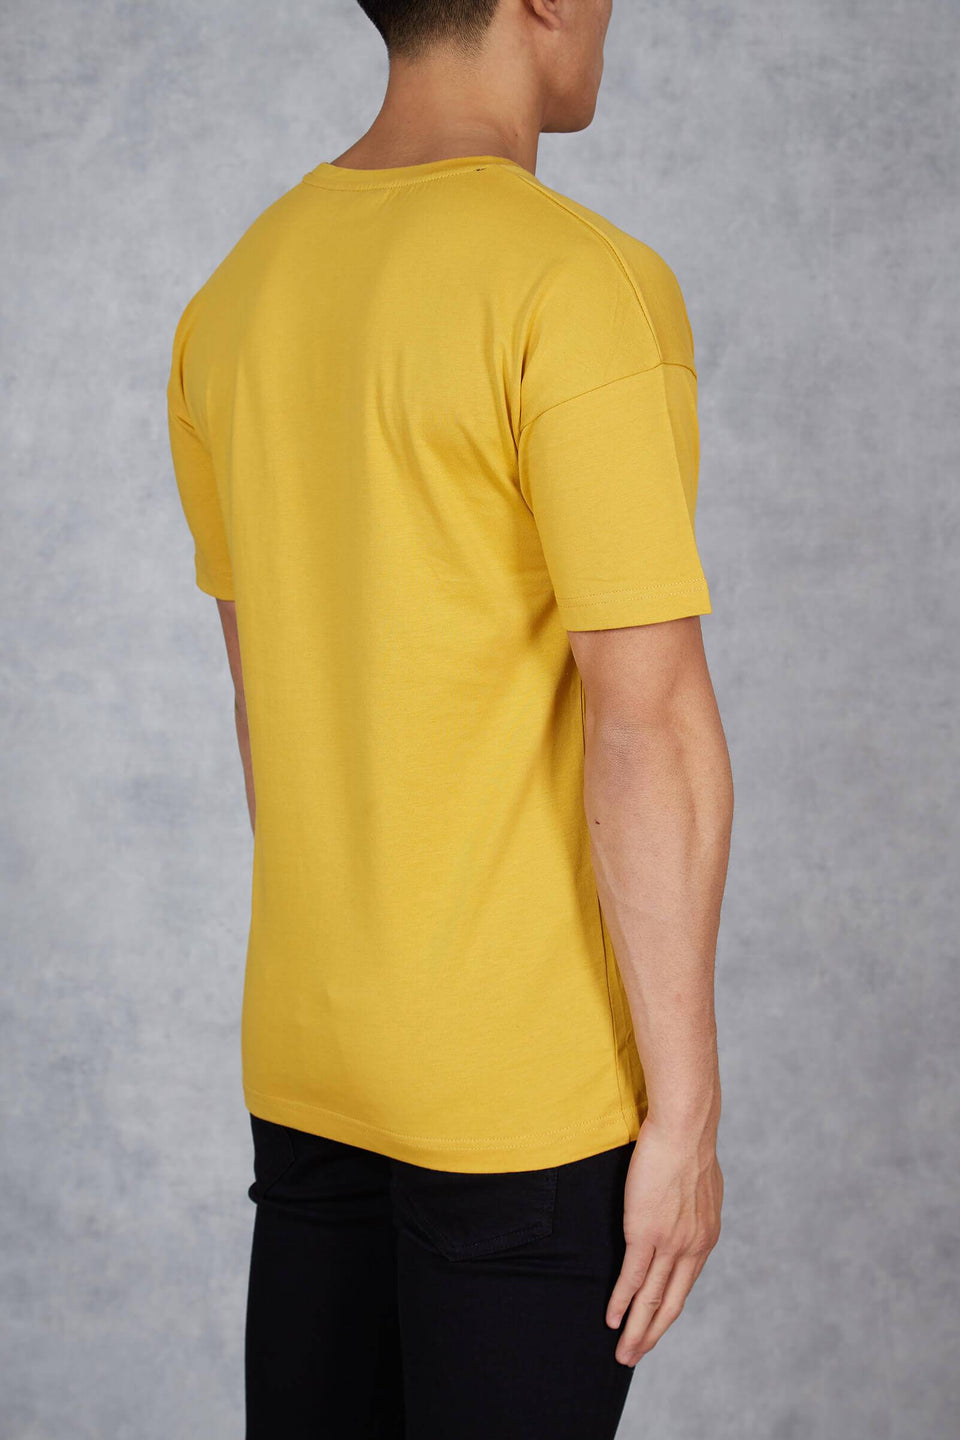 Premium Goods T-Shirt - Mustard